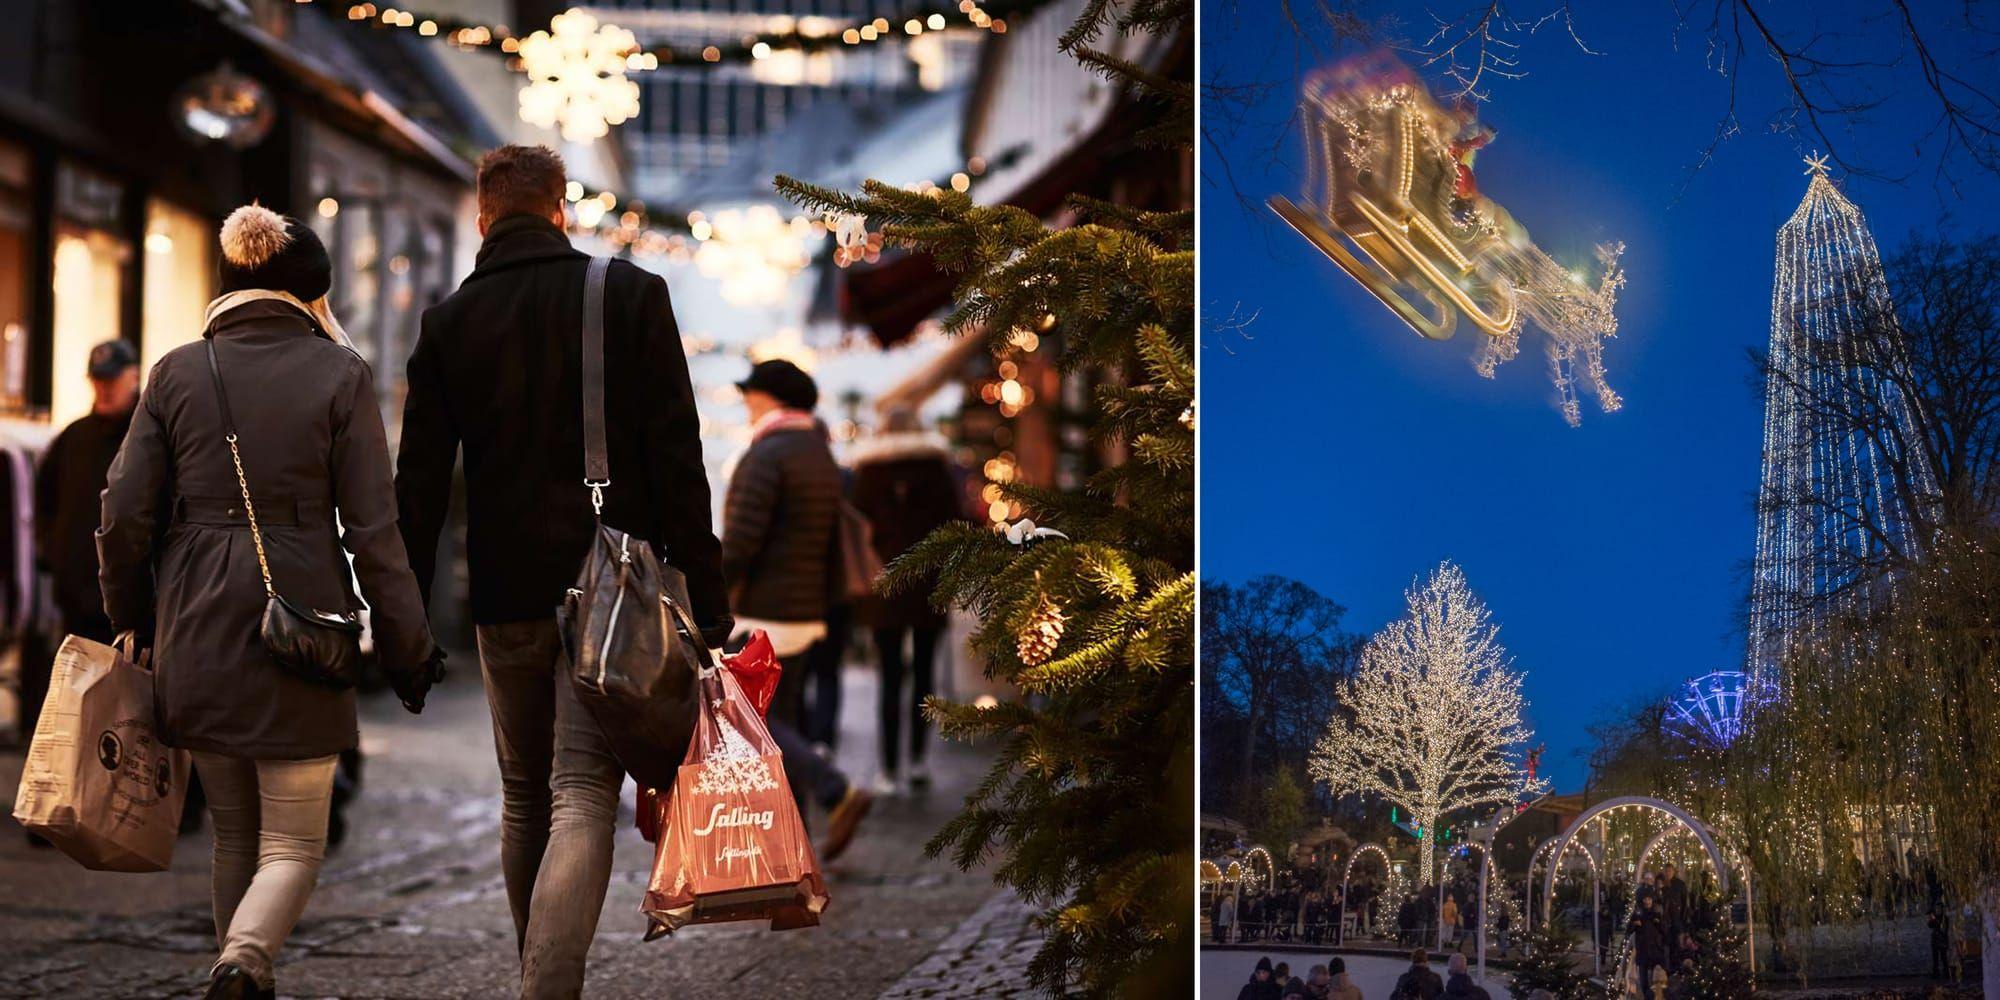 Shopping i mysiga Latinerkvarteret eller bara njuta av Århus maffiga julbelysning? Här finns det mesta för att hitta den rätta julkänslan.